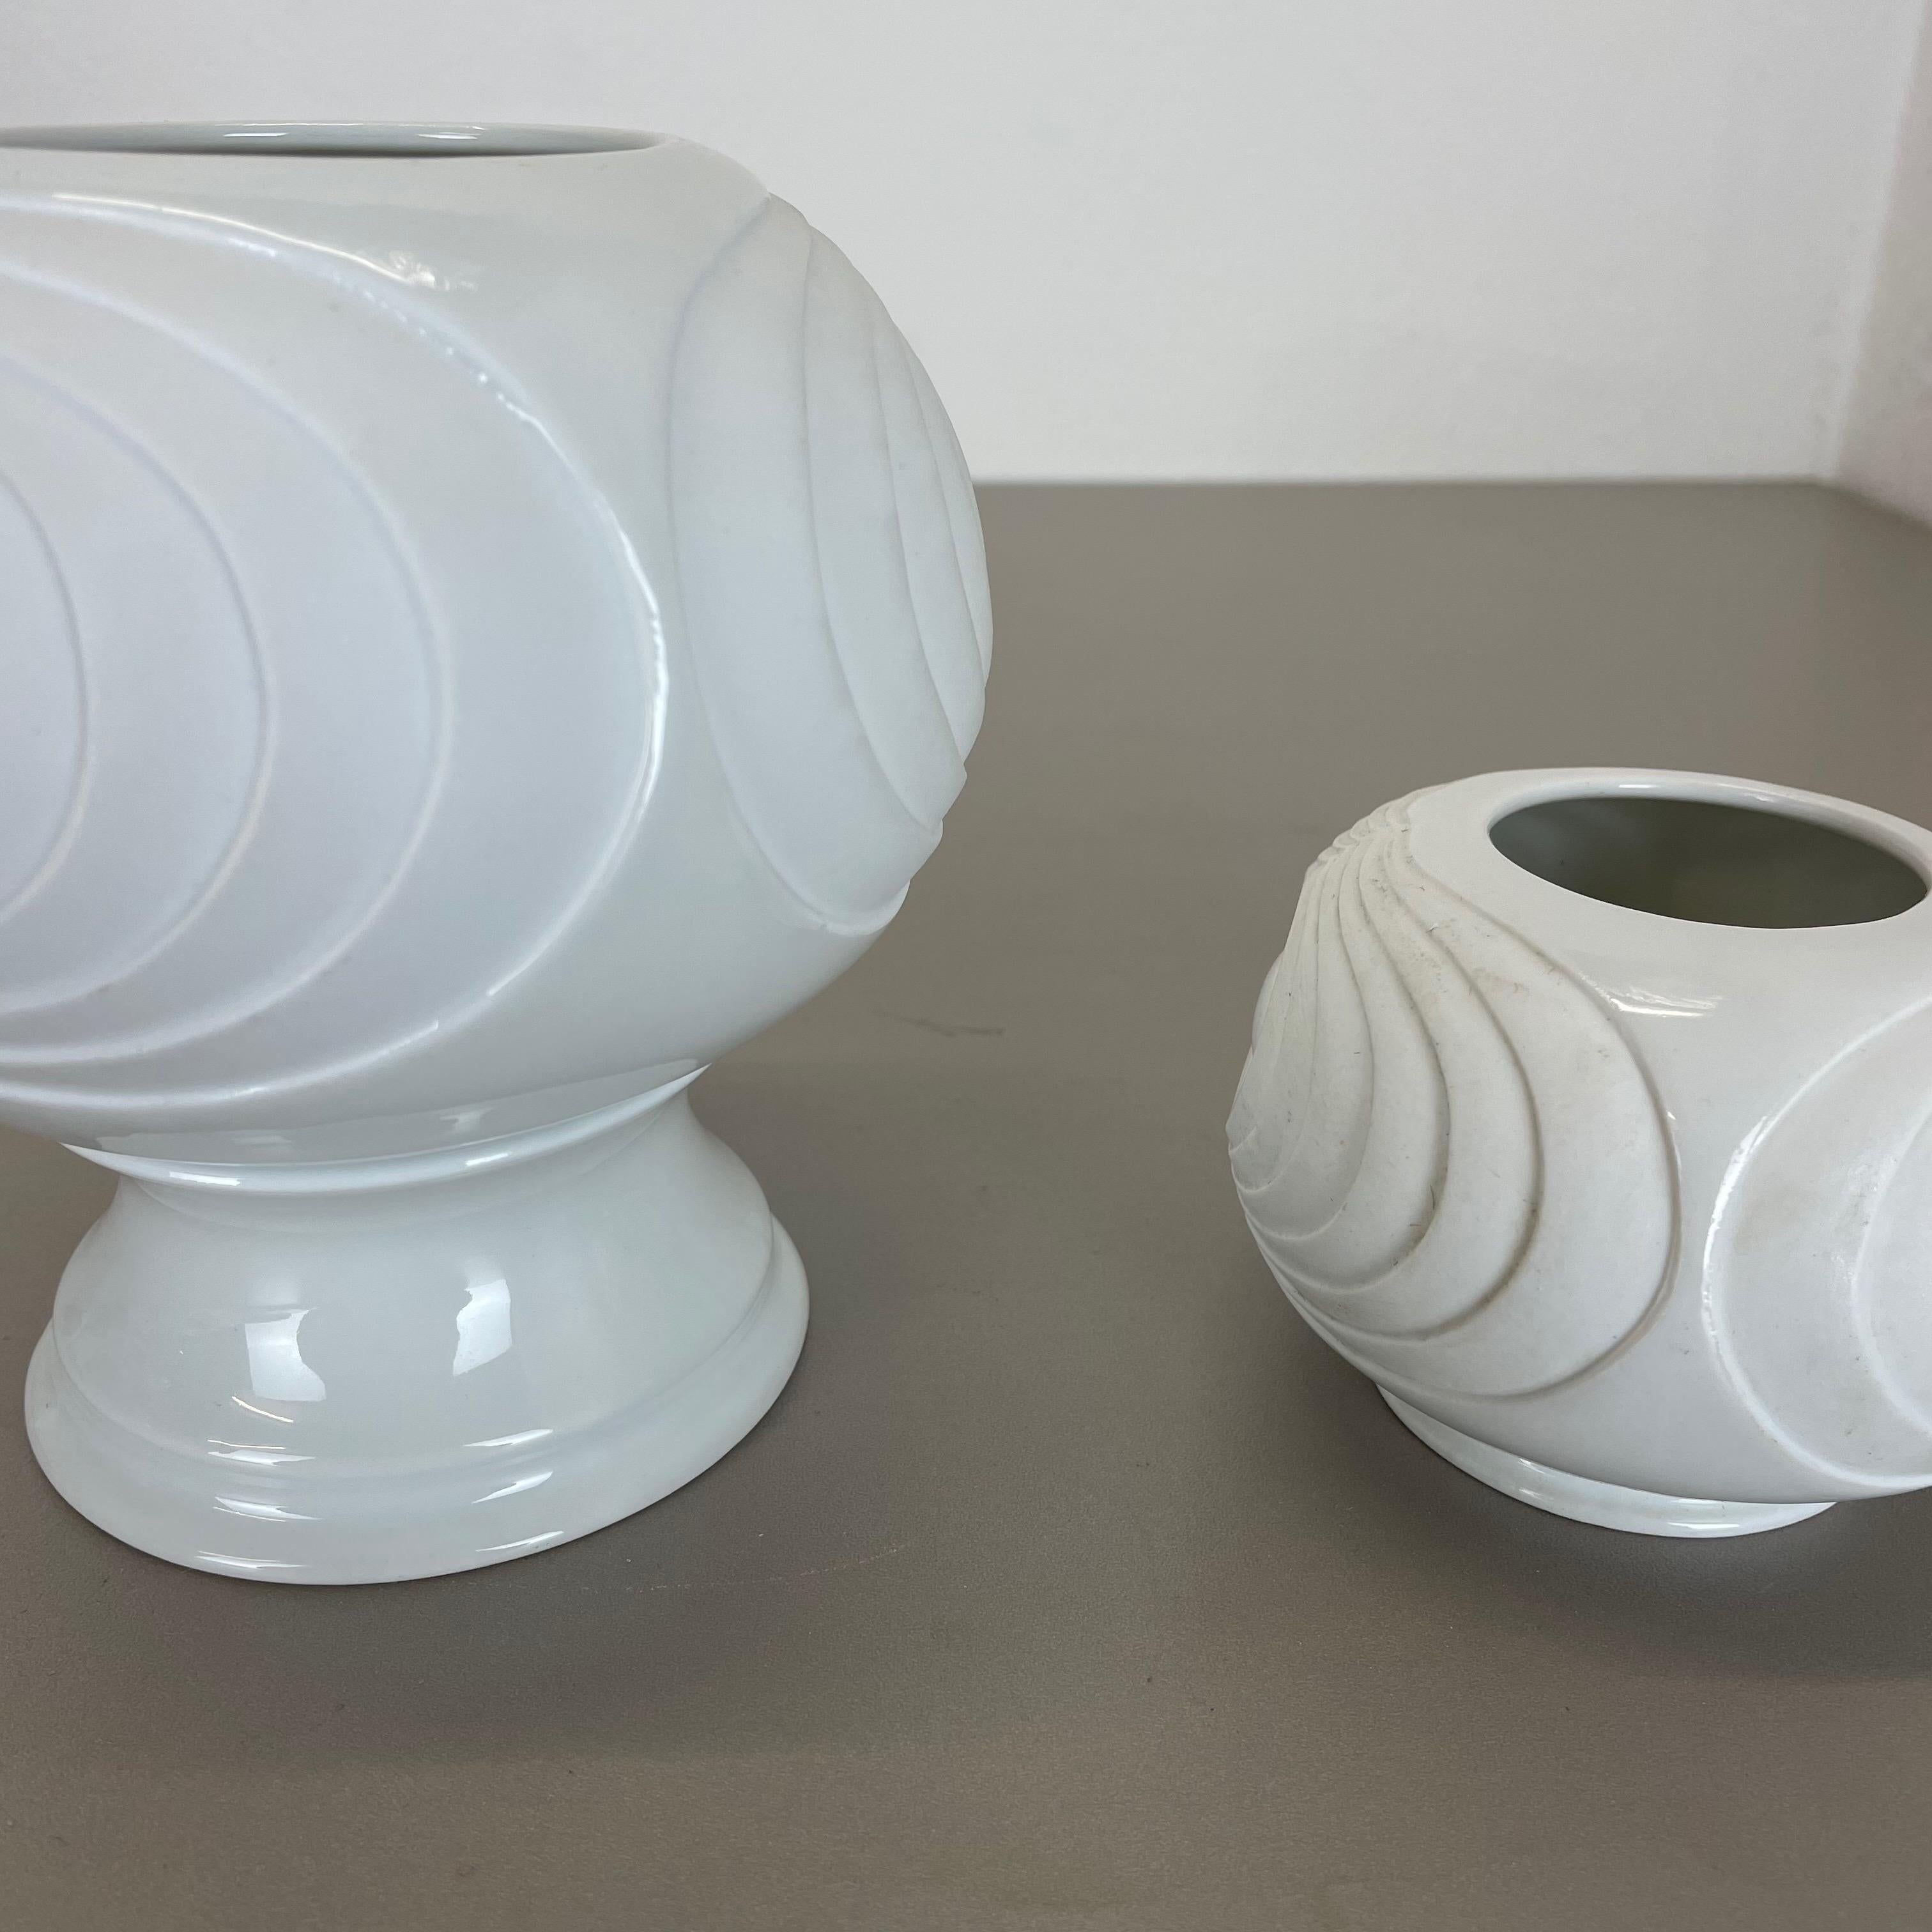 Set of 2 Original Porcelain OP Art Vase Made by Royal Bavaria KPM Germany, 1970s For Sale 6